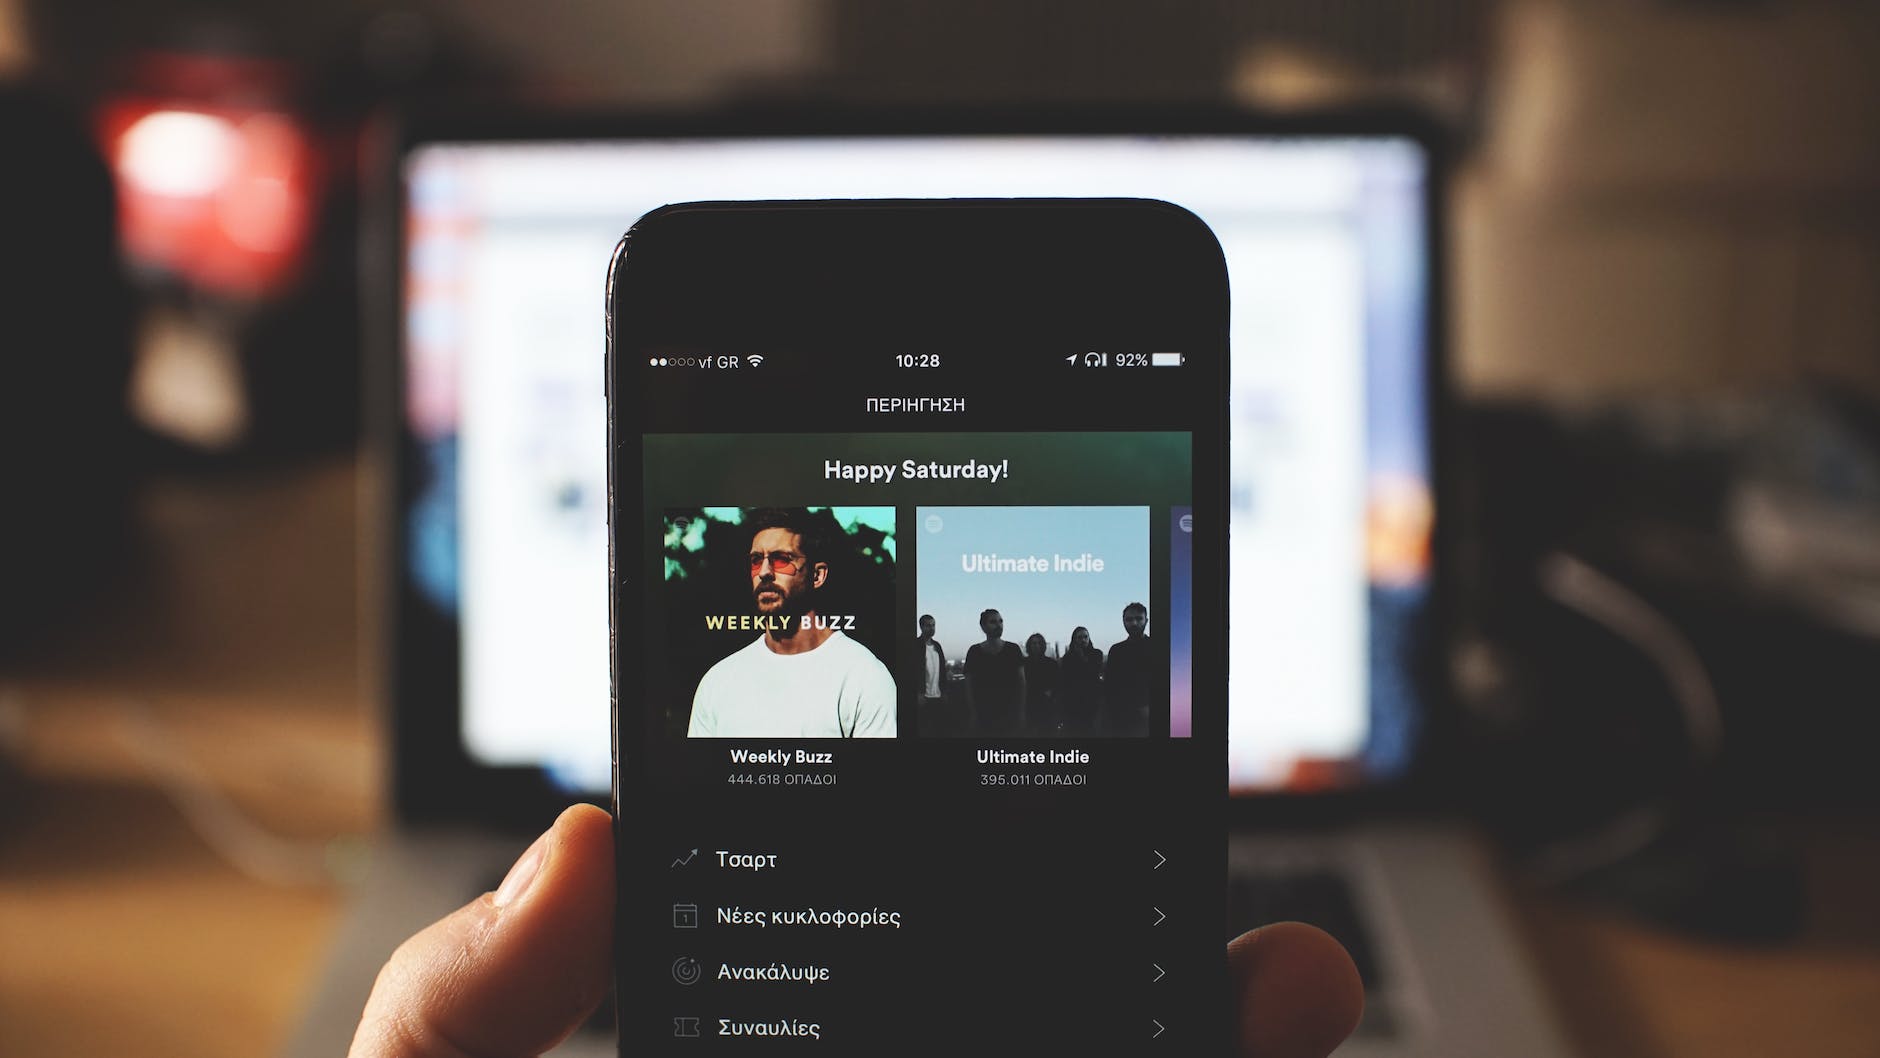 2024年UX/UI趨勢: UX 使用者經驗在2024年其中一項重點是：更強調跨平台兼容性，確保在不同設備和操作系統上實現卓越的性能。

比如知名音樂串流平台Spotify，能夠讓準備下般的使用者，打開手機 Spotify的App就可以繼續剛剛透過桌機版應用程式或網站聆聽到一半的Podcast與音樂，讓使用者體驗可以持續下去，不會有斷點。